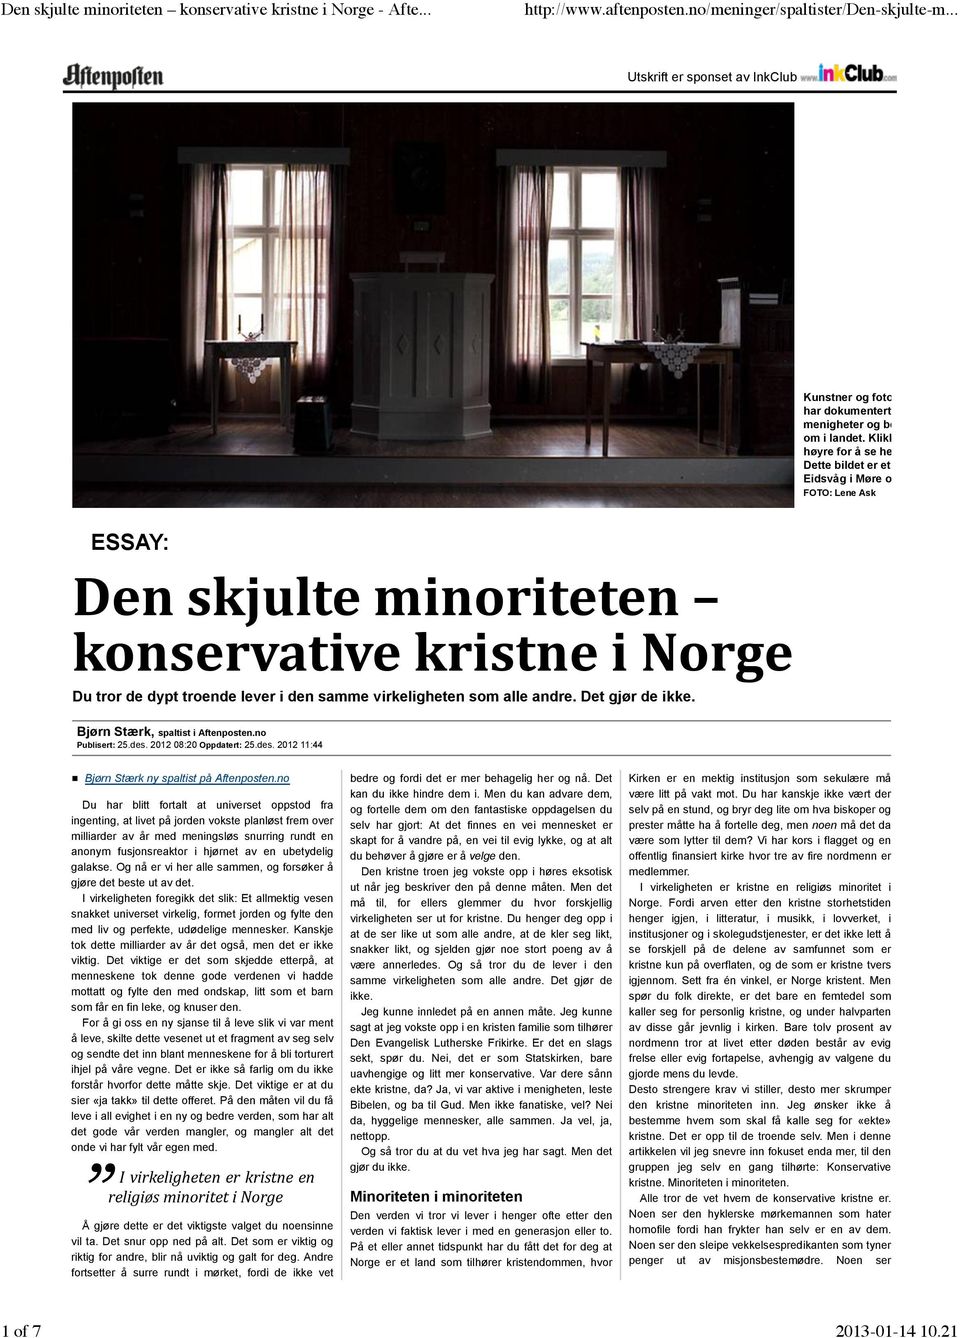 FOTO: Lene Ask ESSAY: Den skjulte minoriteten konservative kristne i Norge Du tror de dypt troende lever i den samme virkeligheten som alle andre. Det gjør de ikke.